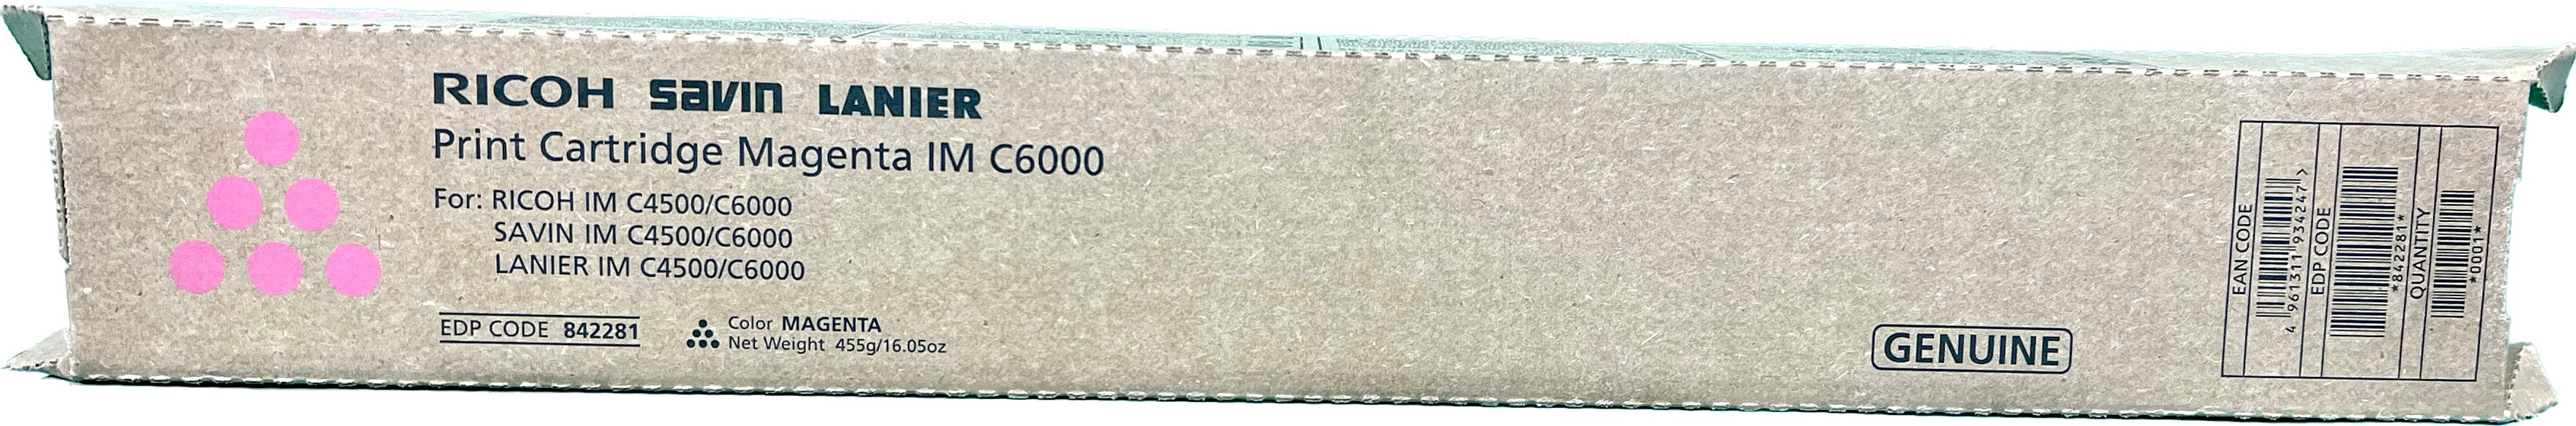 Genuine Ricoh Magenta Toner Cartridge | 842281 | IM C6000